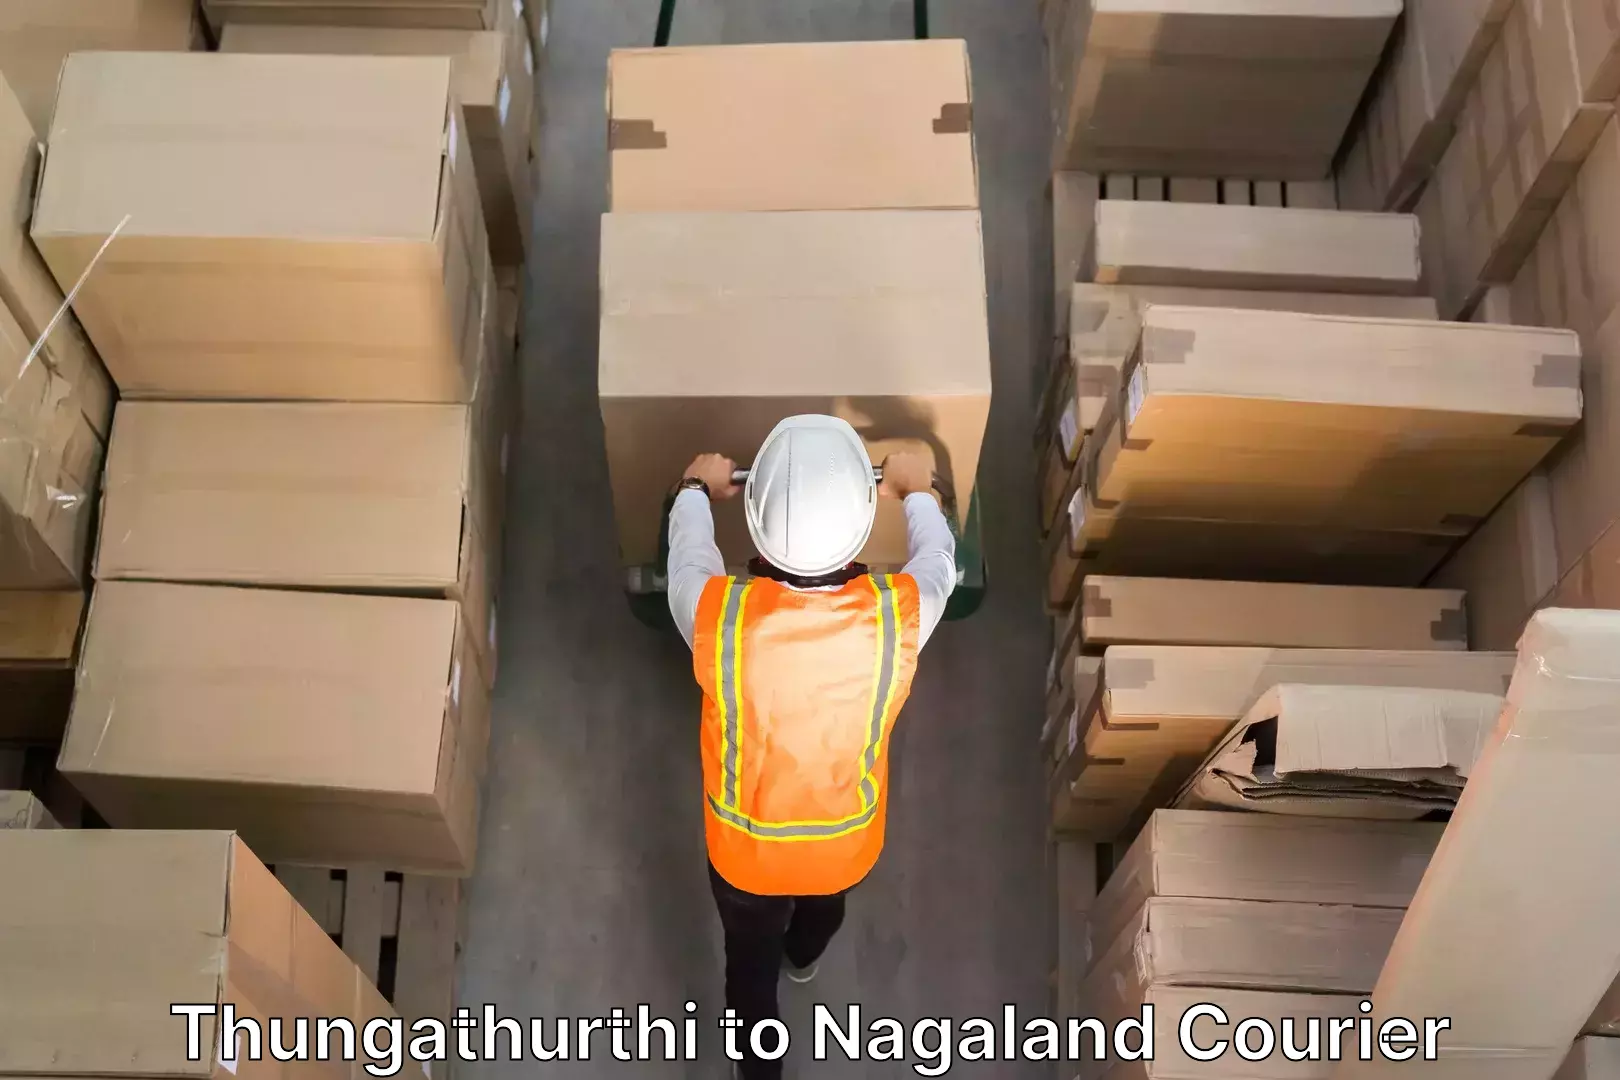 Efficient furniture movers Thungathurthi to Nagaland